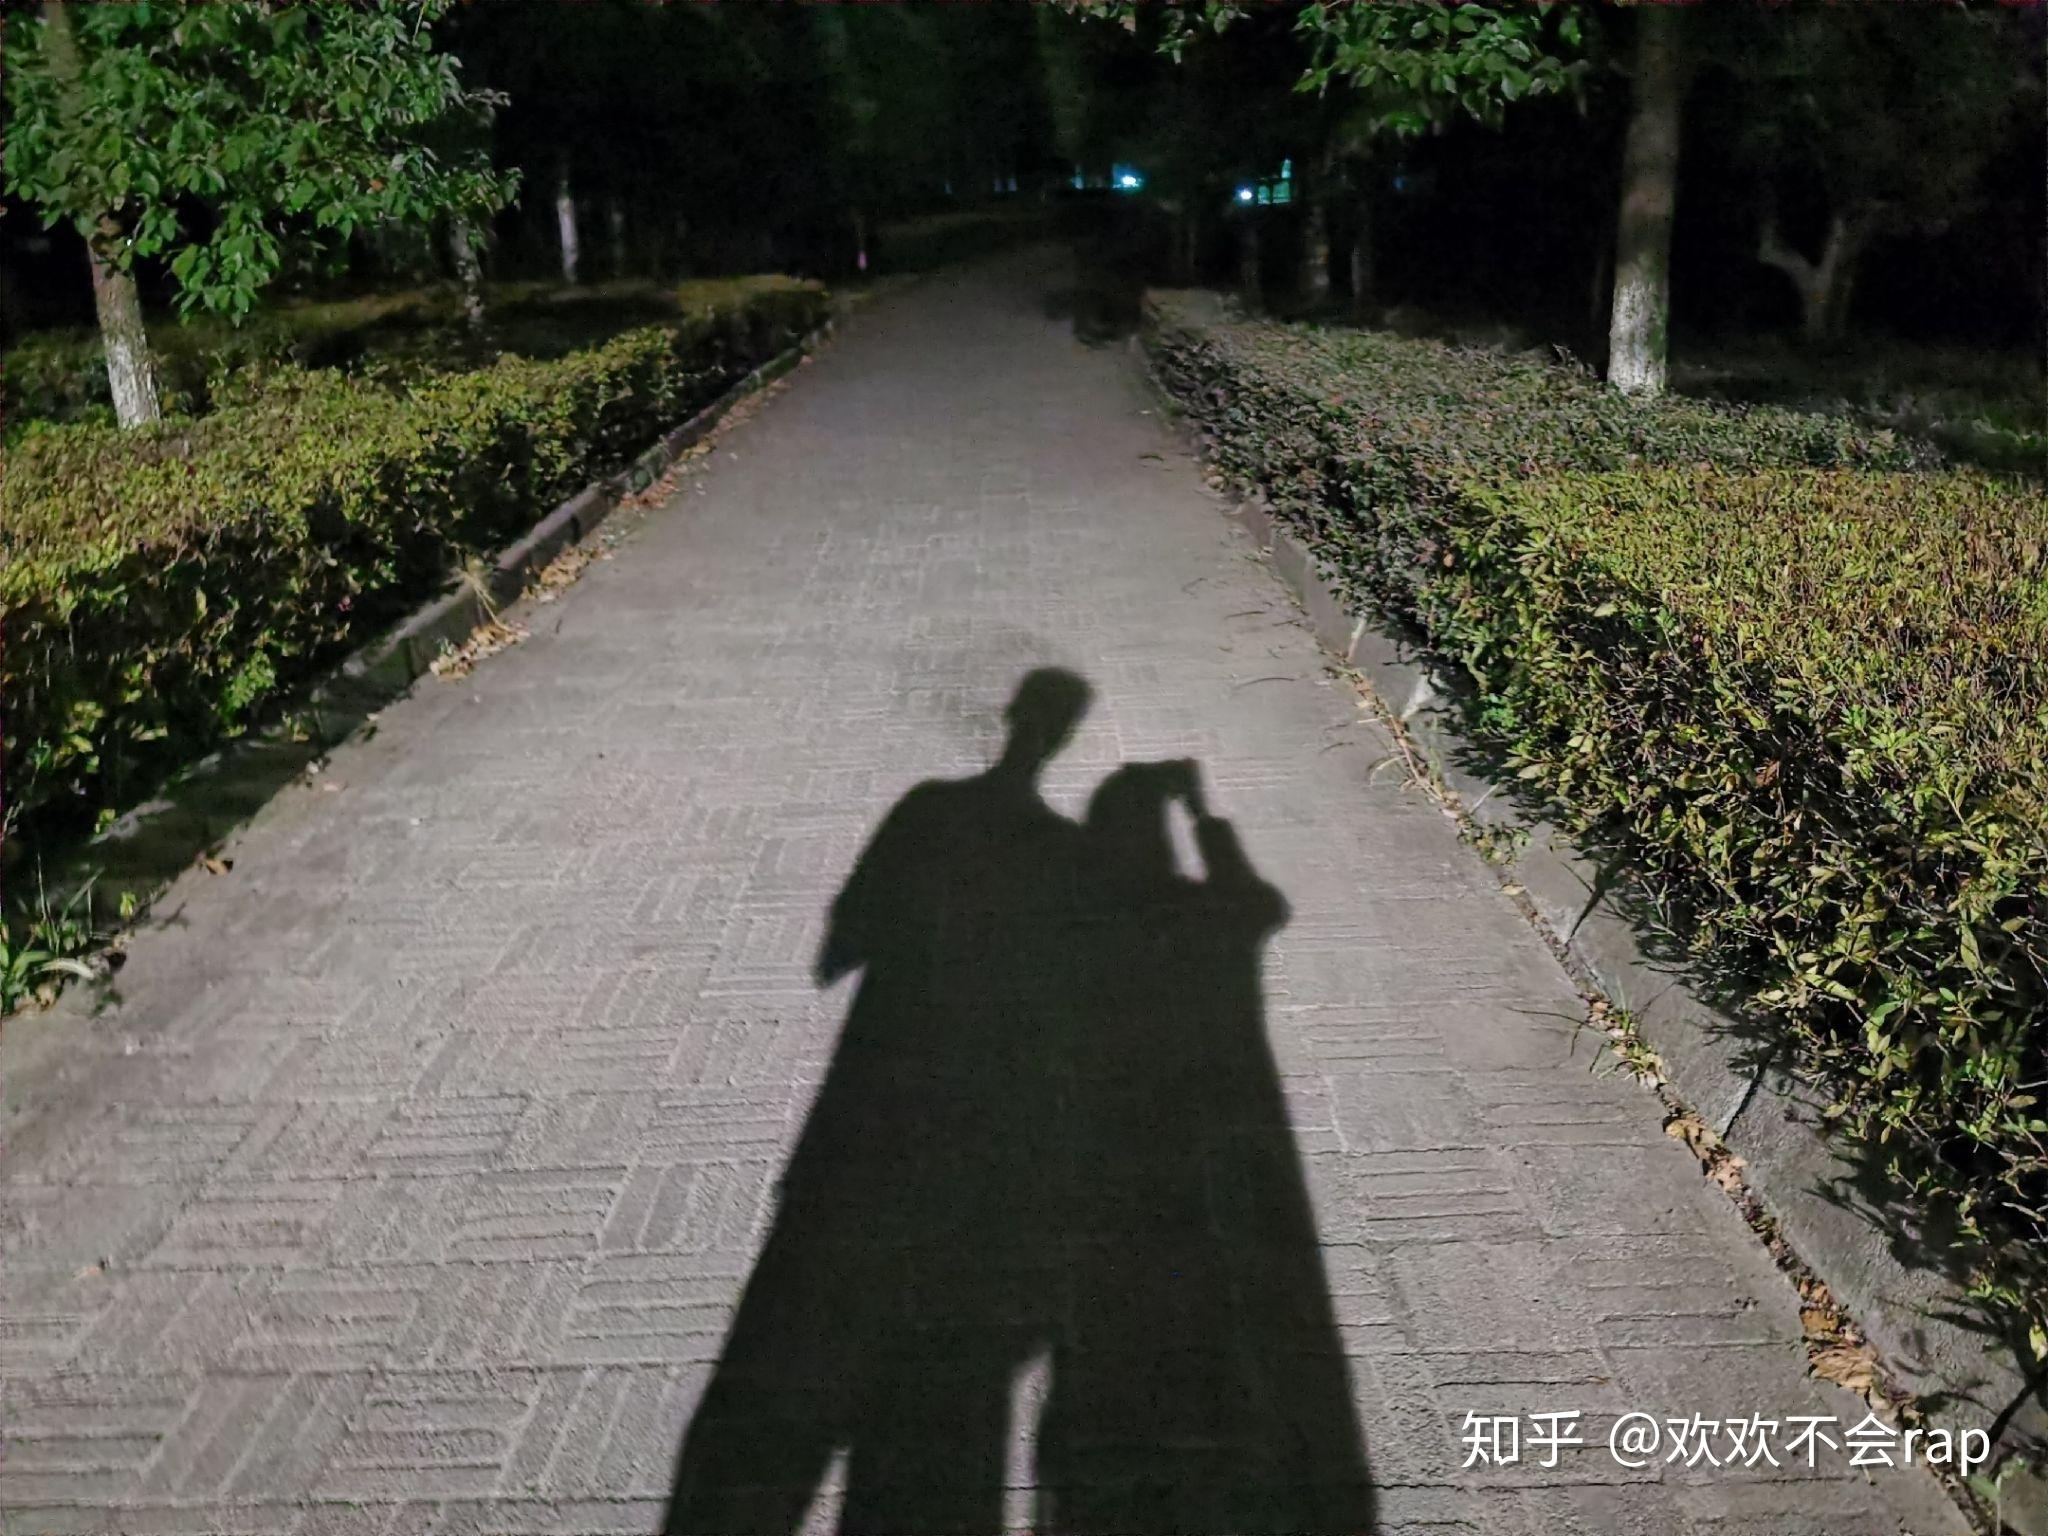 情侣深夜影子照 真实图片